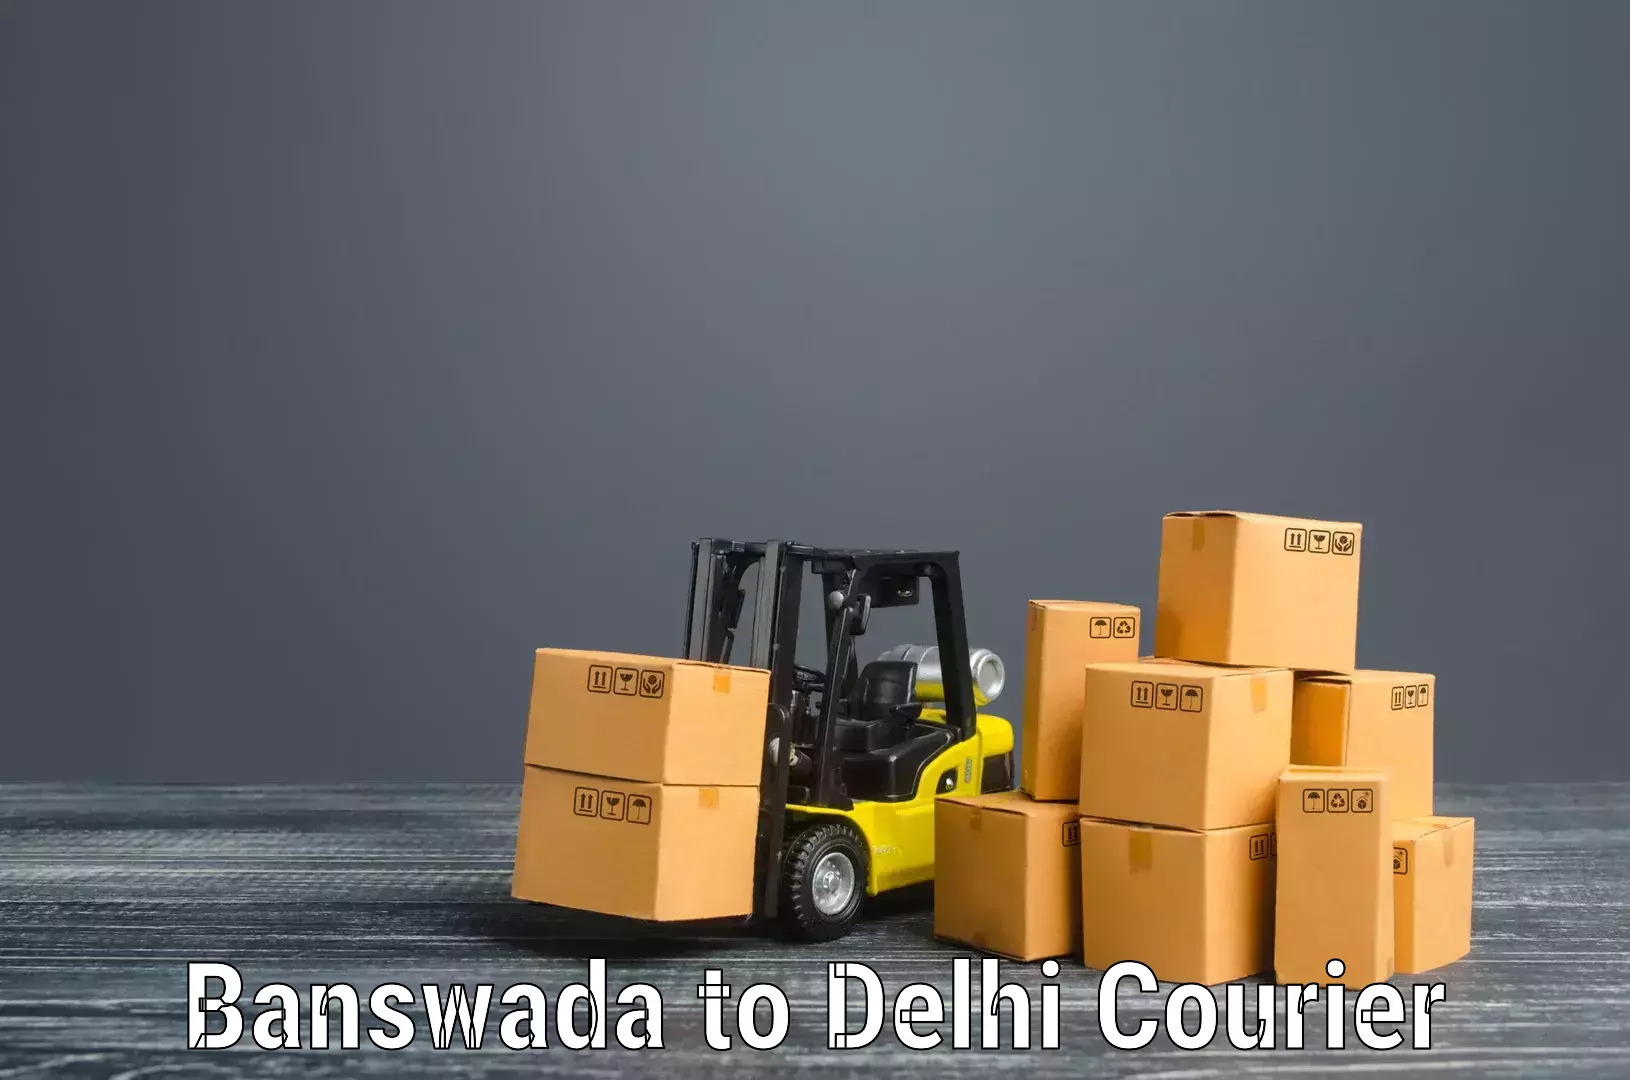 Furniture transport experts Banswada to Delhi